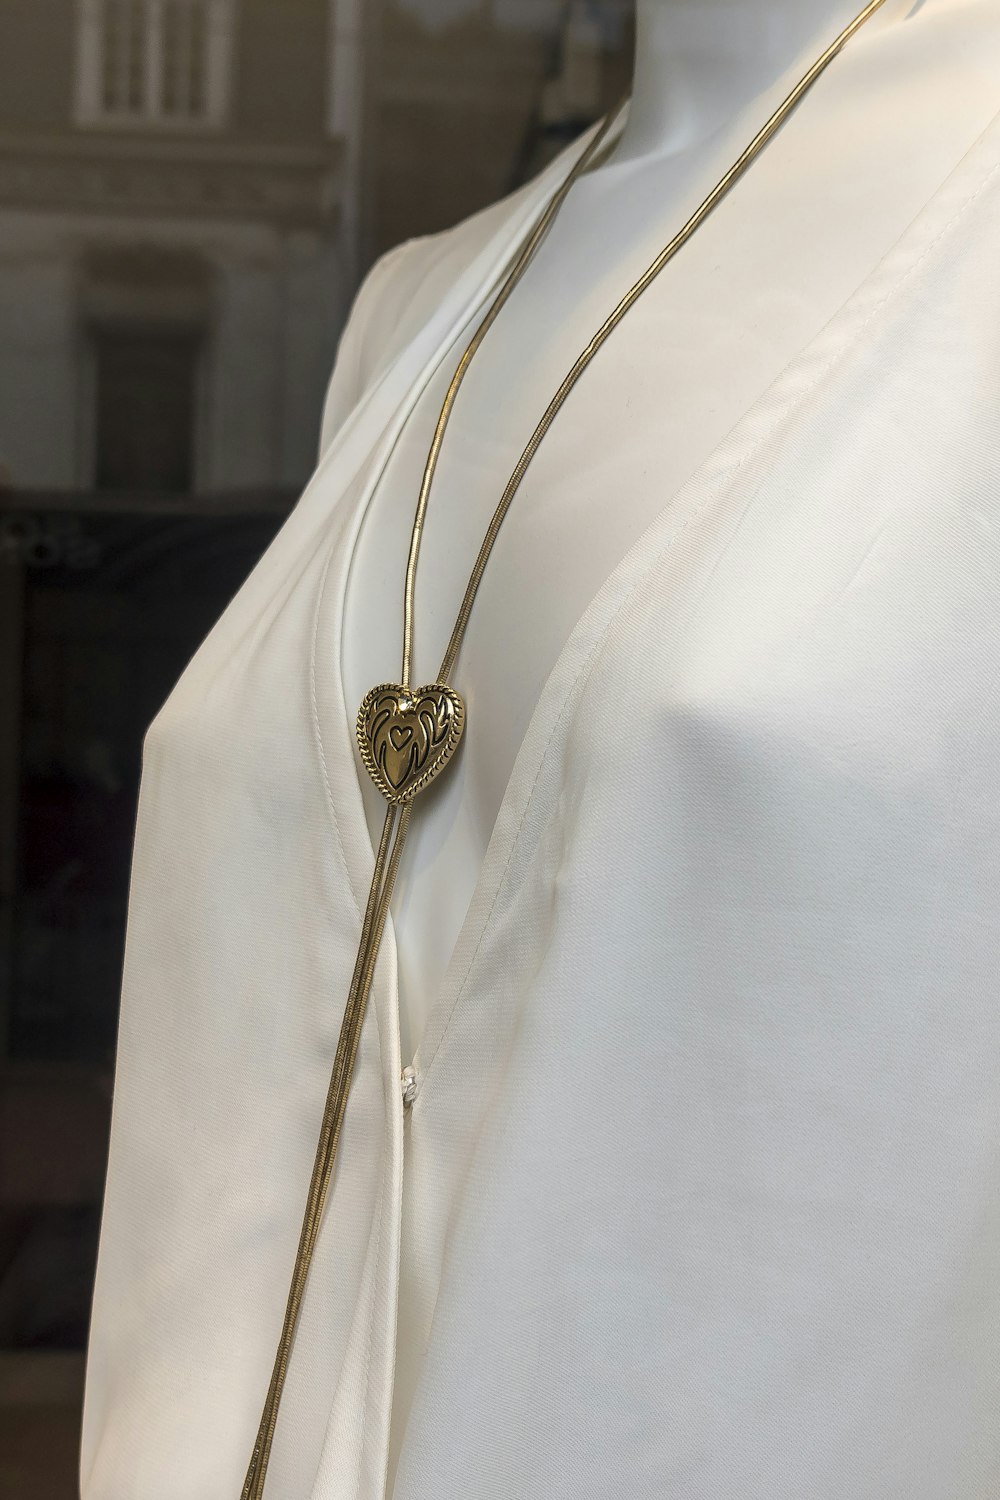 Collier pendentif rond en or sur textile blanc